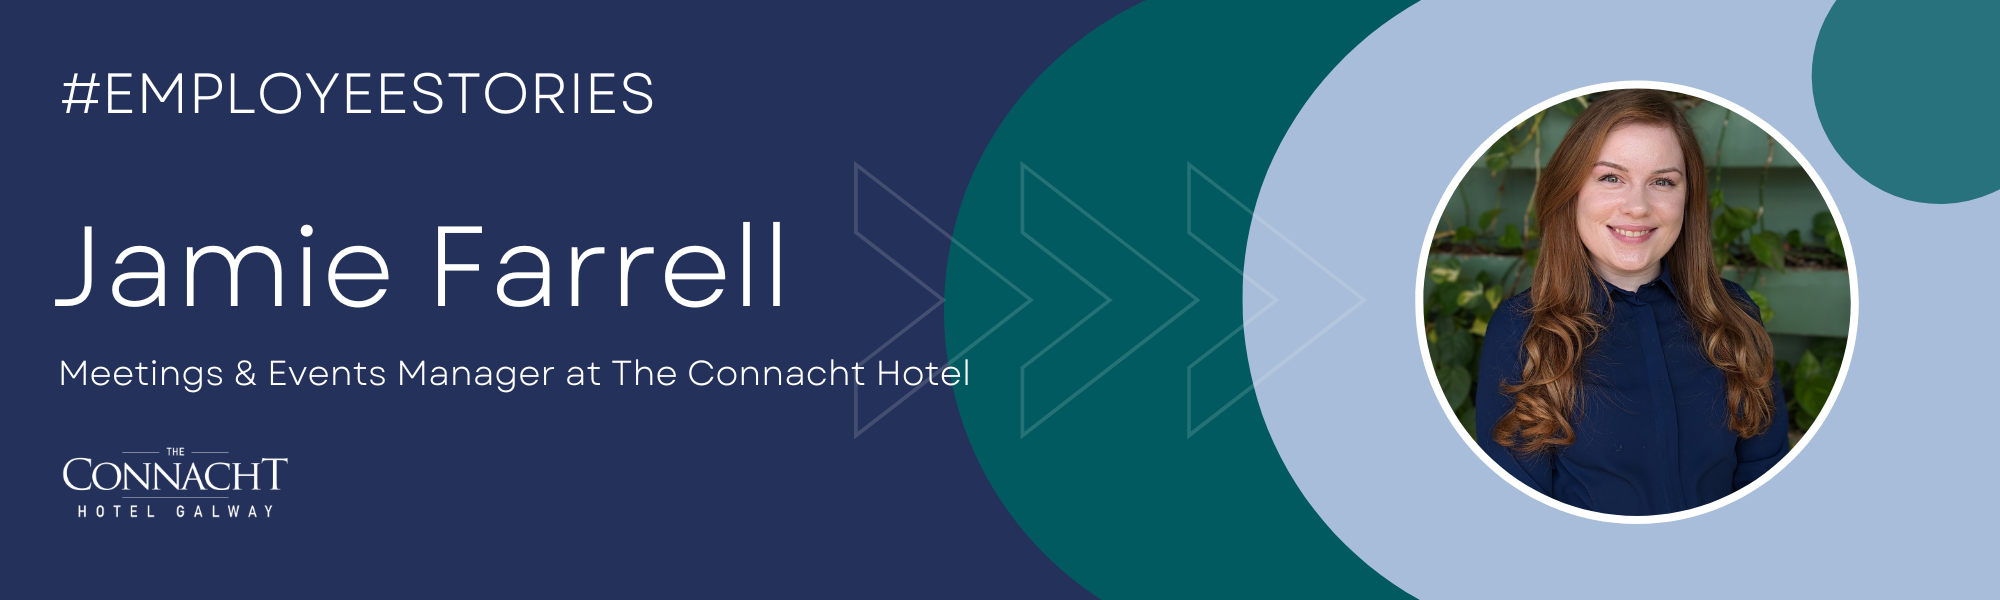 Jamie Farrell, The Connacht Hotel